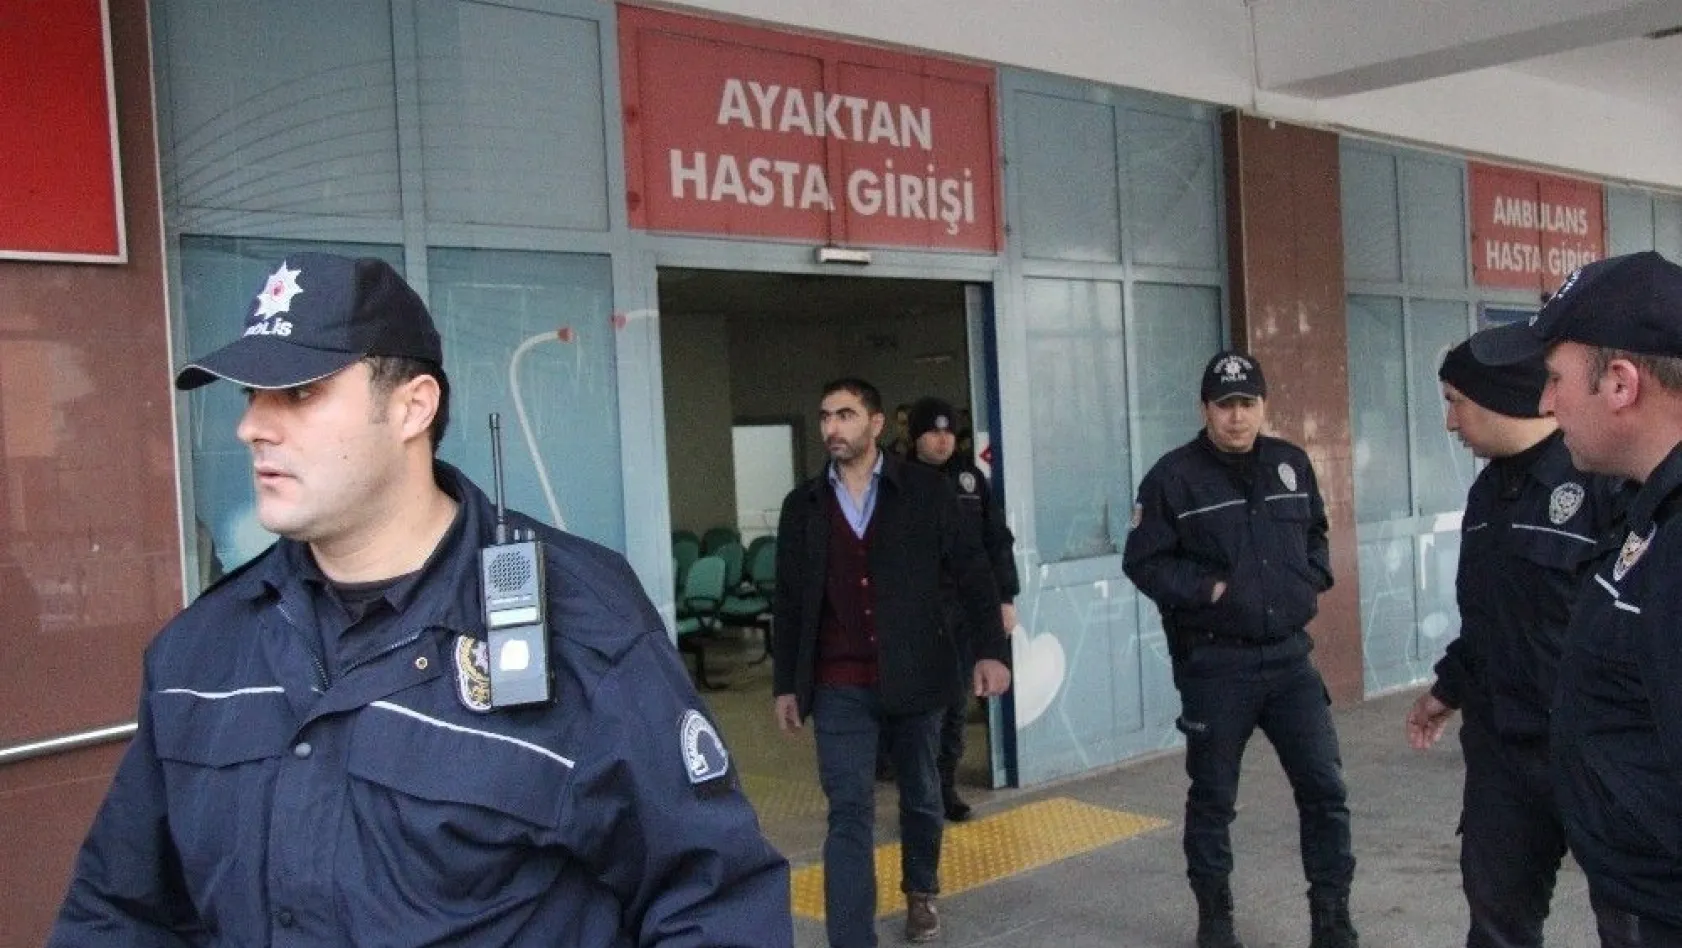 Kahramanmaraş'ta FETÖ/PDY şüphelisi 13 öğretmen adliyeye sevk edildi
